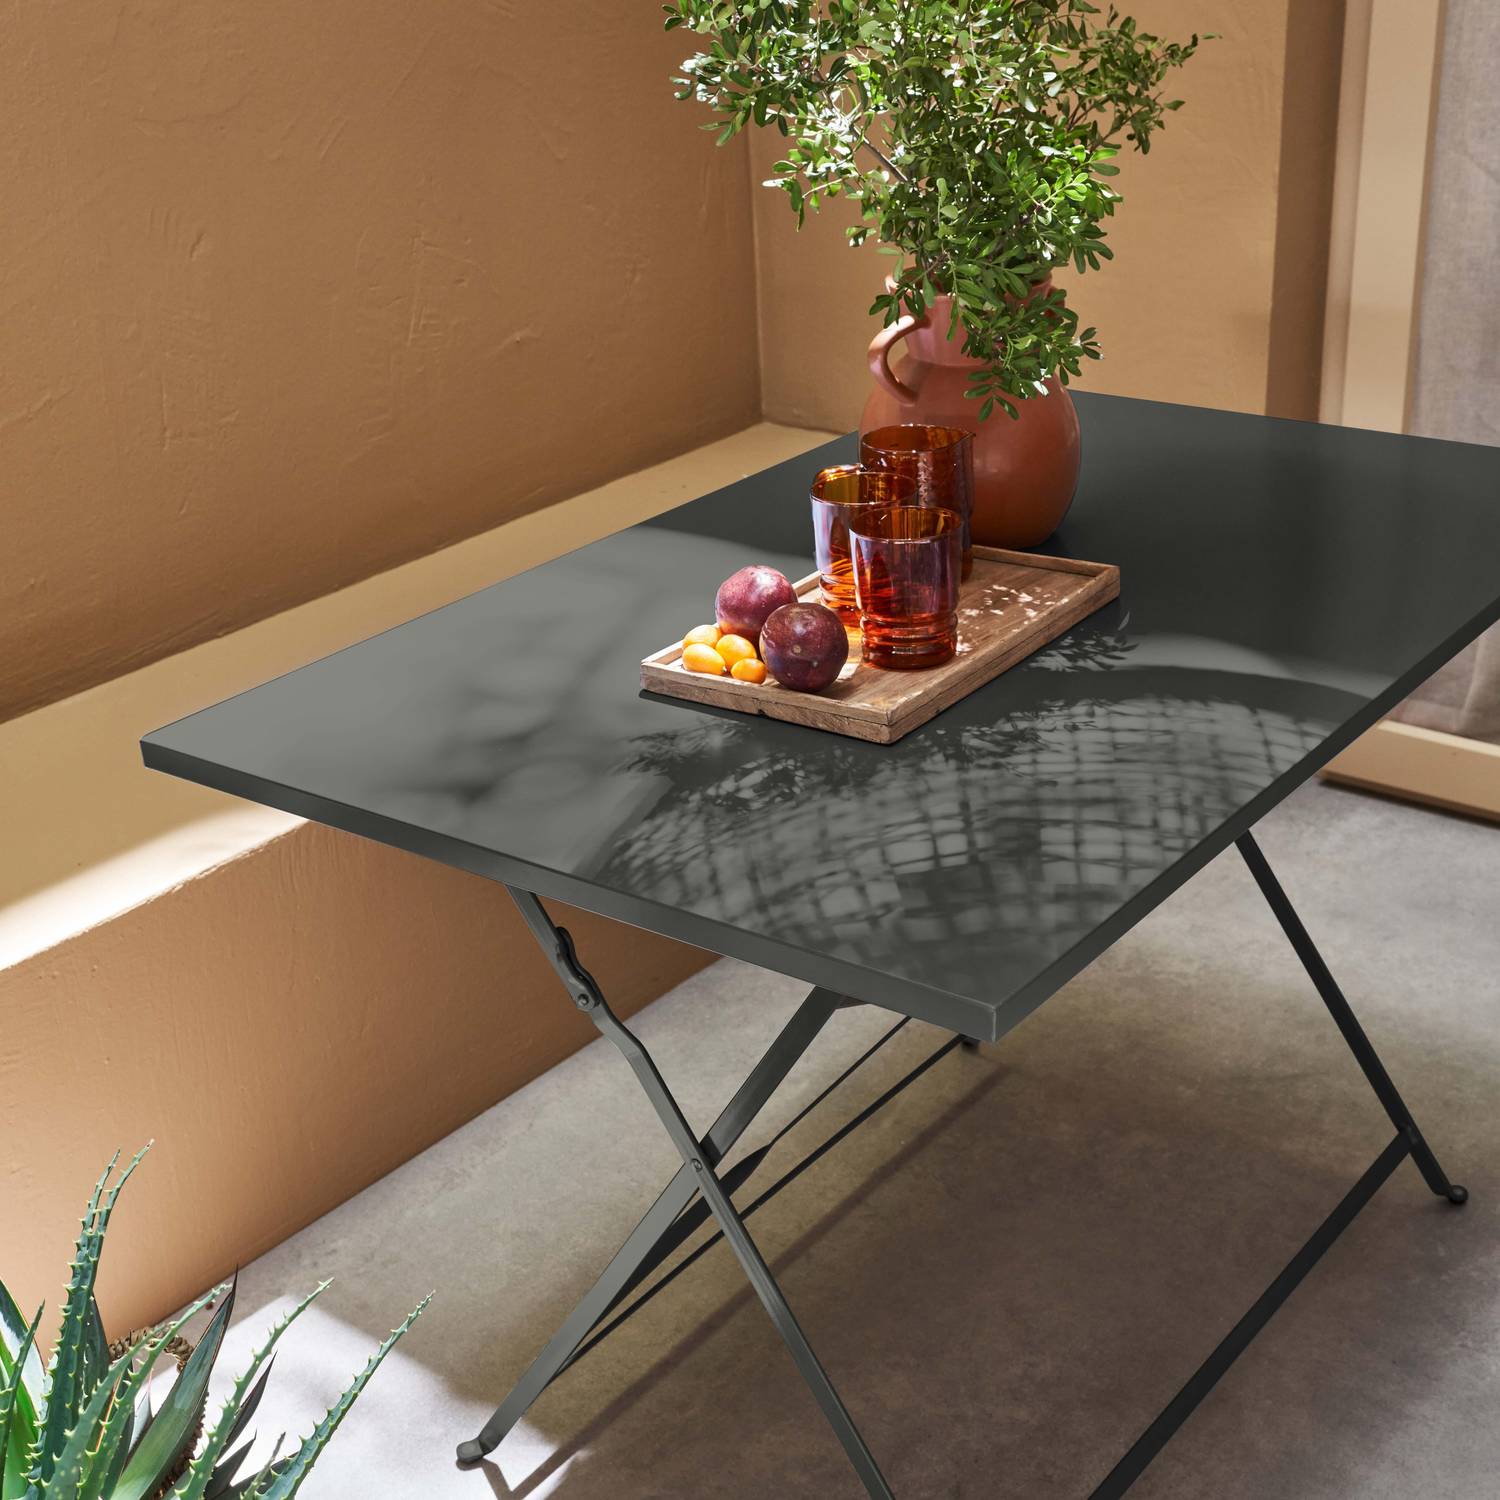 Emilia - Bistro tuintafel opvouwbaar - Rechthoekige tafel 110x70cm van staal met thermolak - Antraciet  Photo2